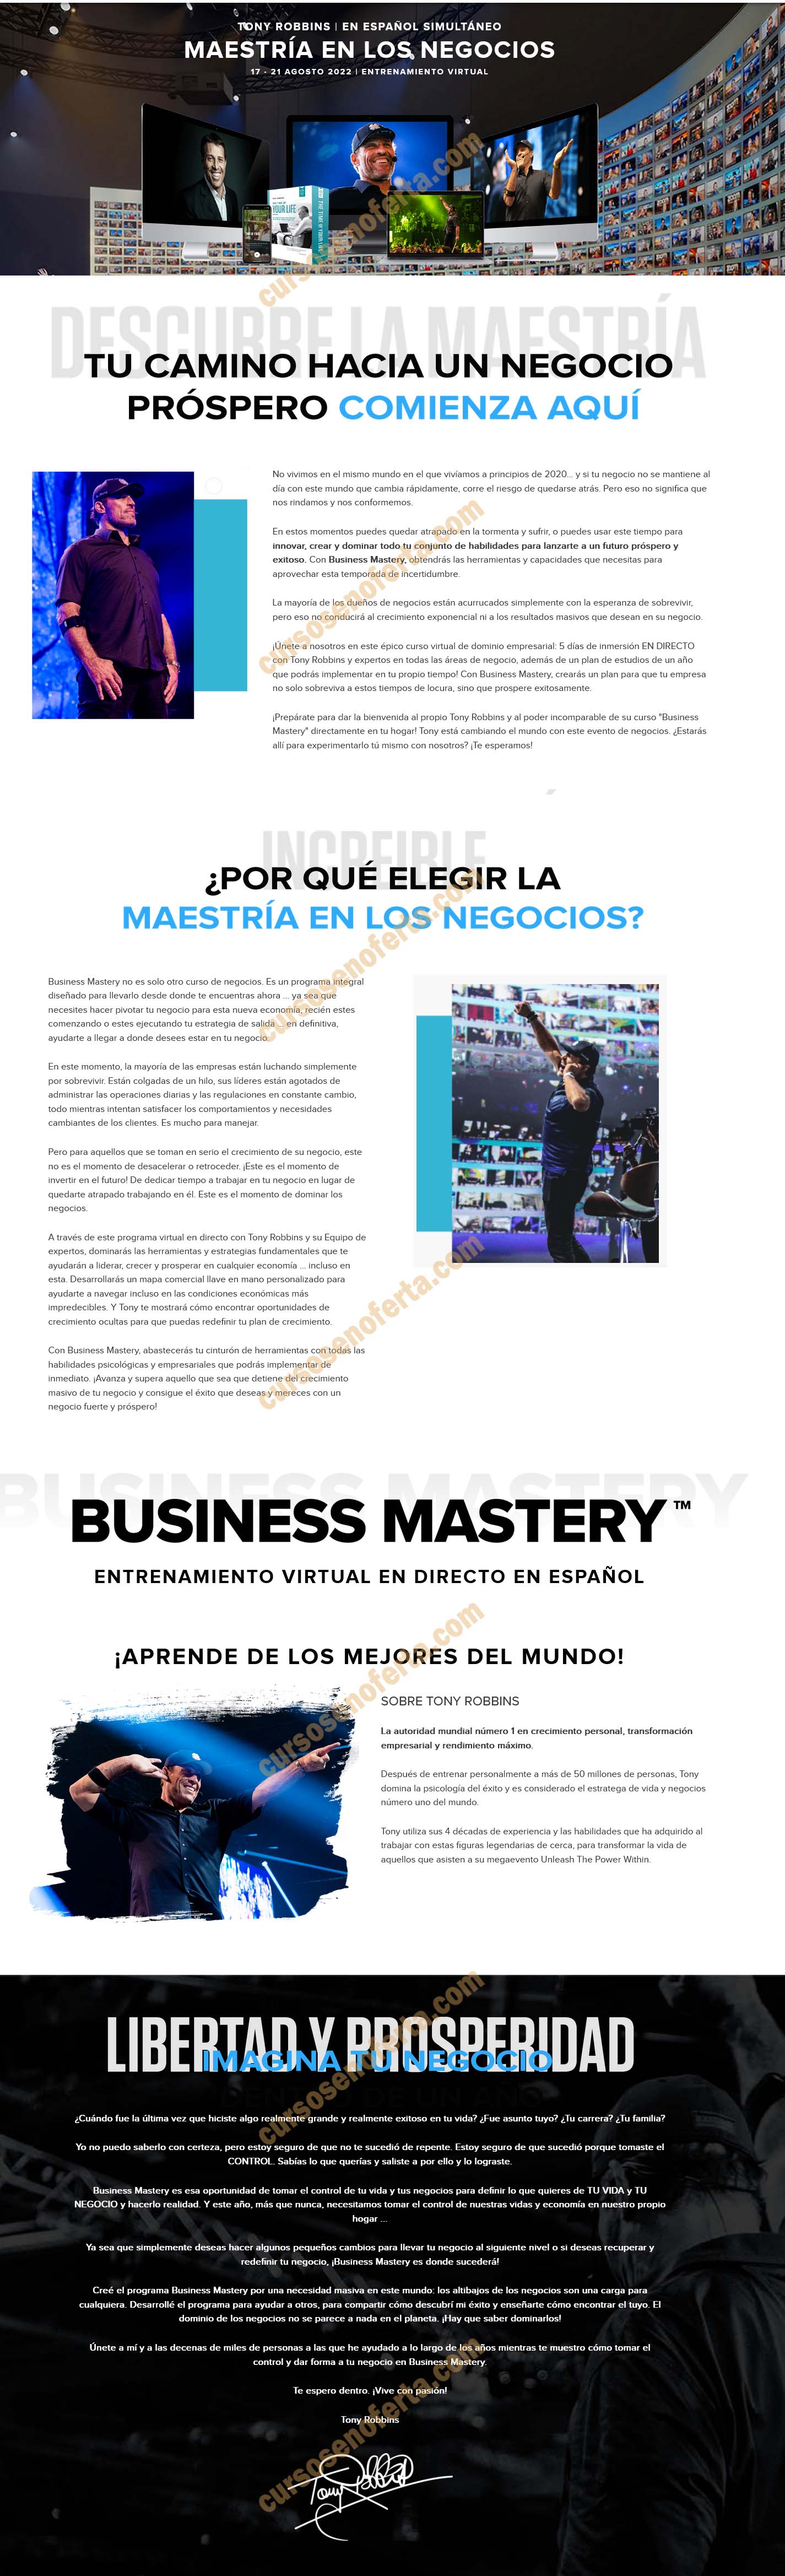 Business Mastery Virtual - tony robbins